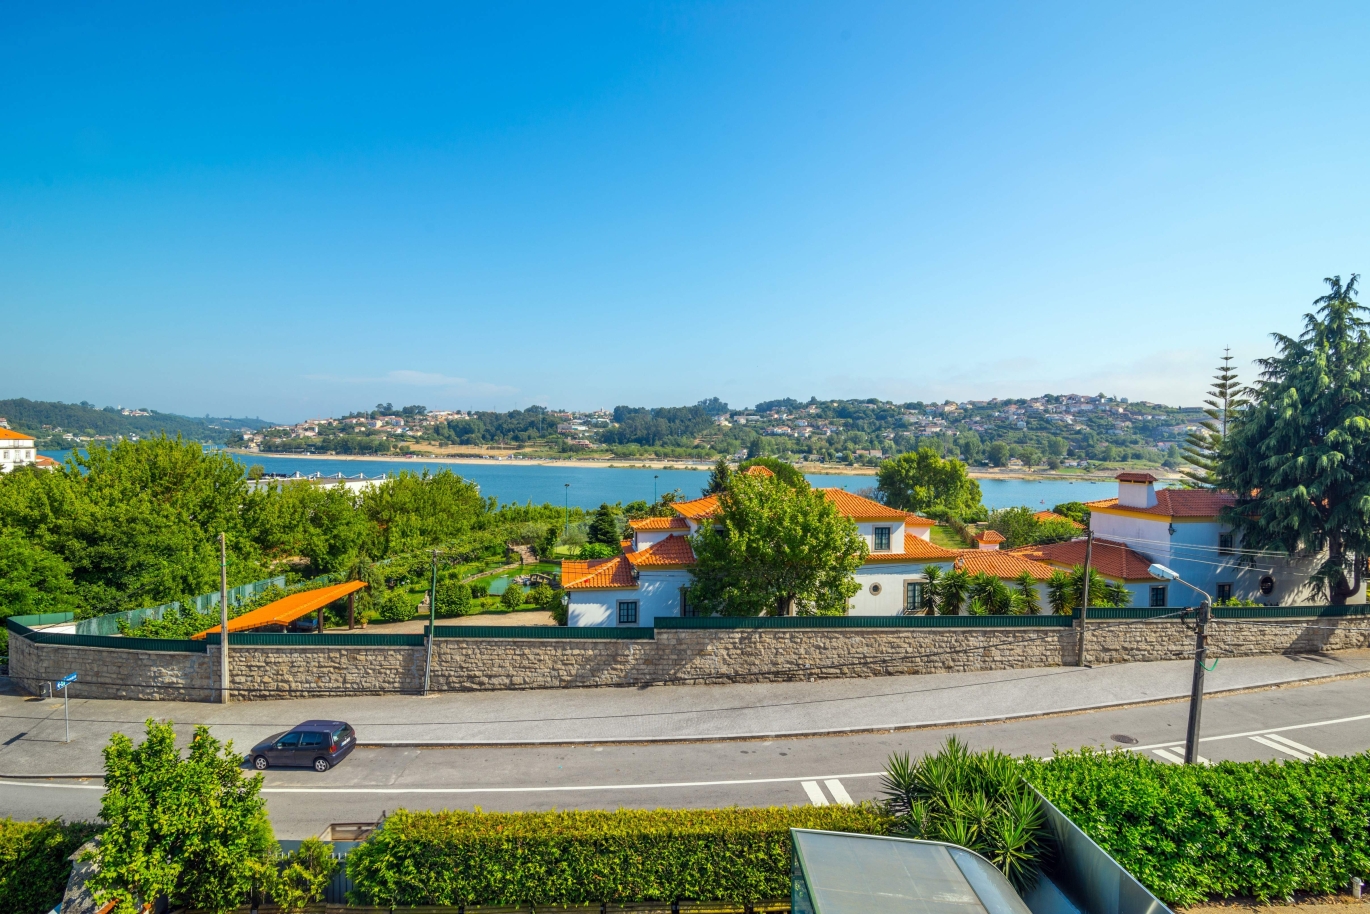 Moradia com vistas sobre o rio, para venda, Valbom, Gondomar, Portugal_143014